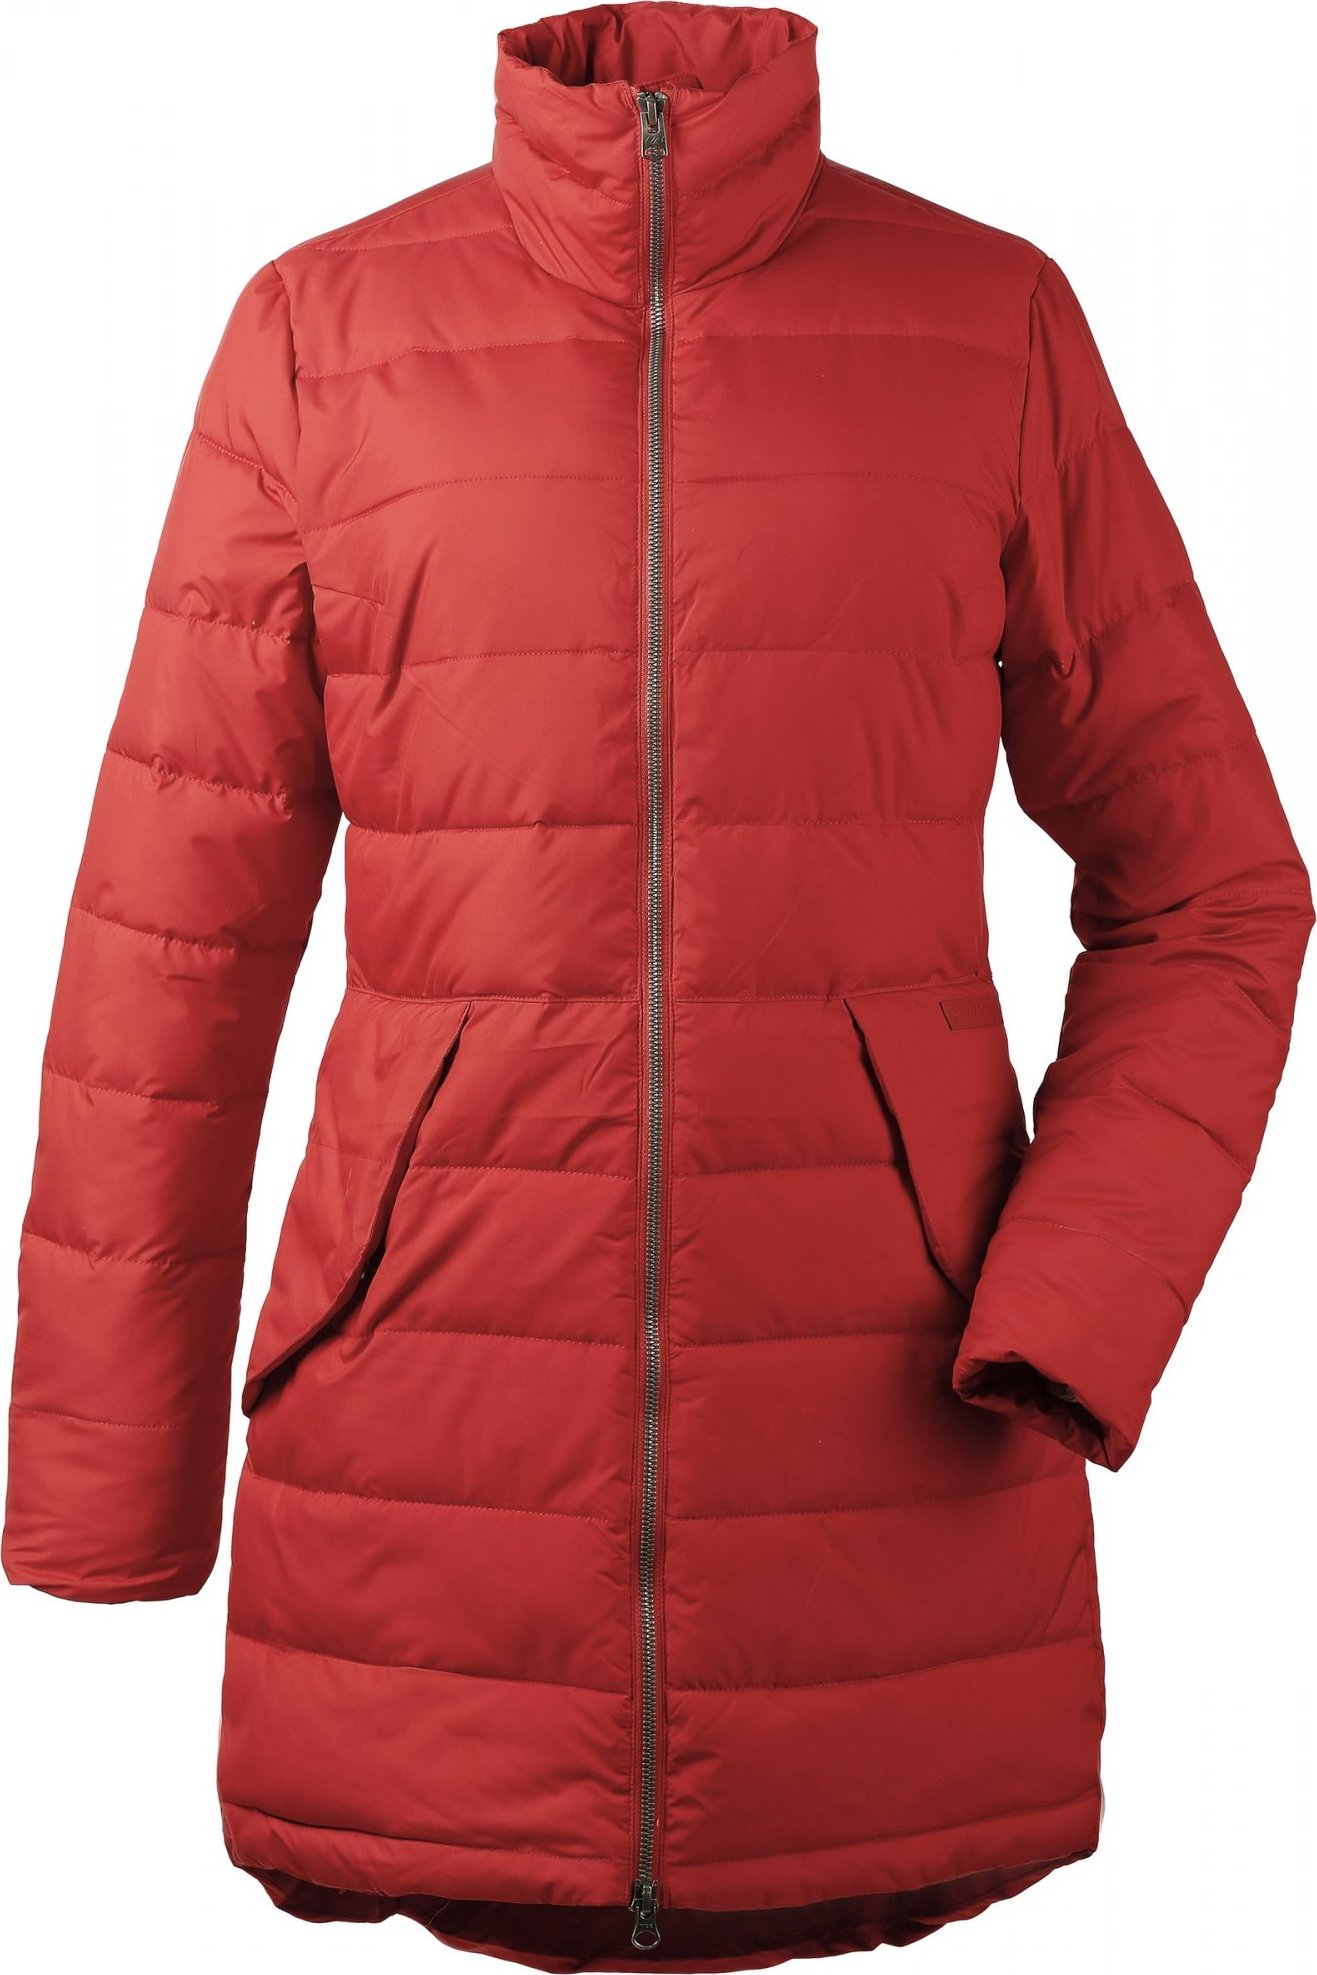 Dámský zimní kabát DIDRIKSONS Hildur oranžový Velikost: 34